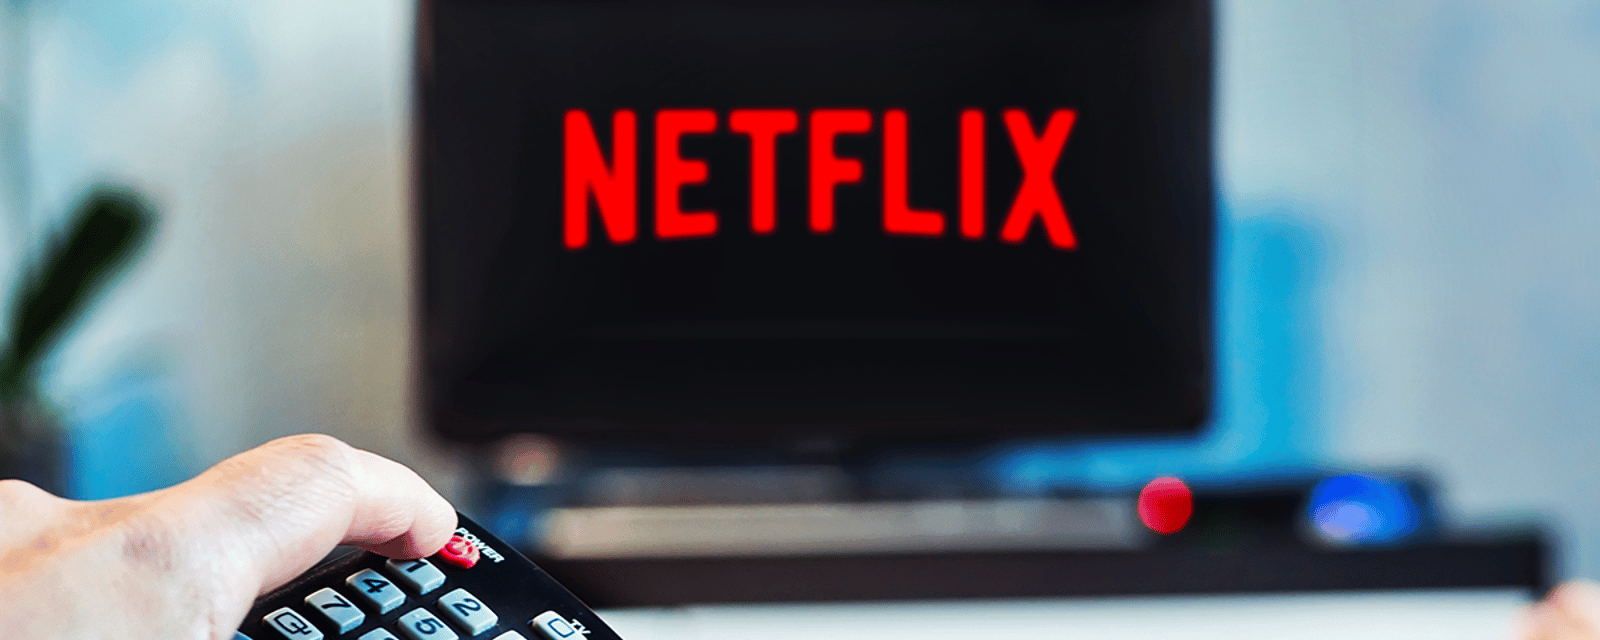 Mauvaise nouvelle pour Netflix qui est en train de perdre de nombreux abonnés